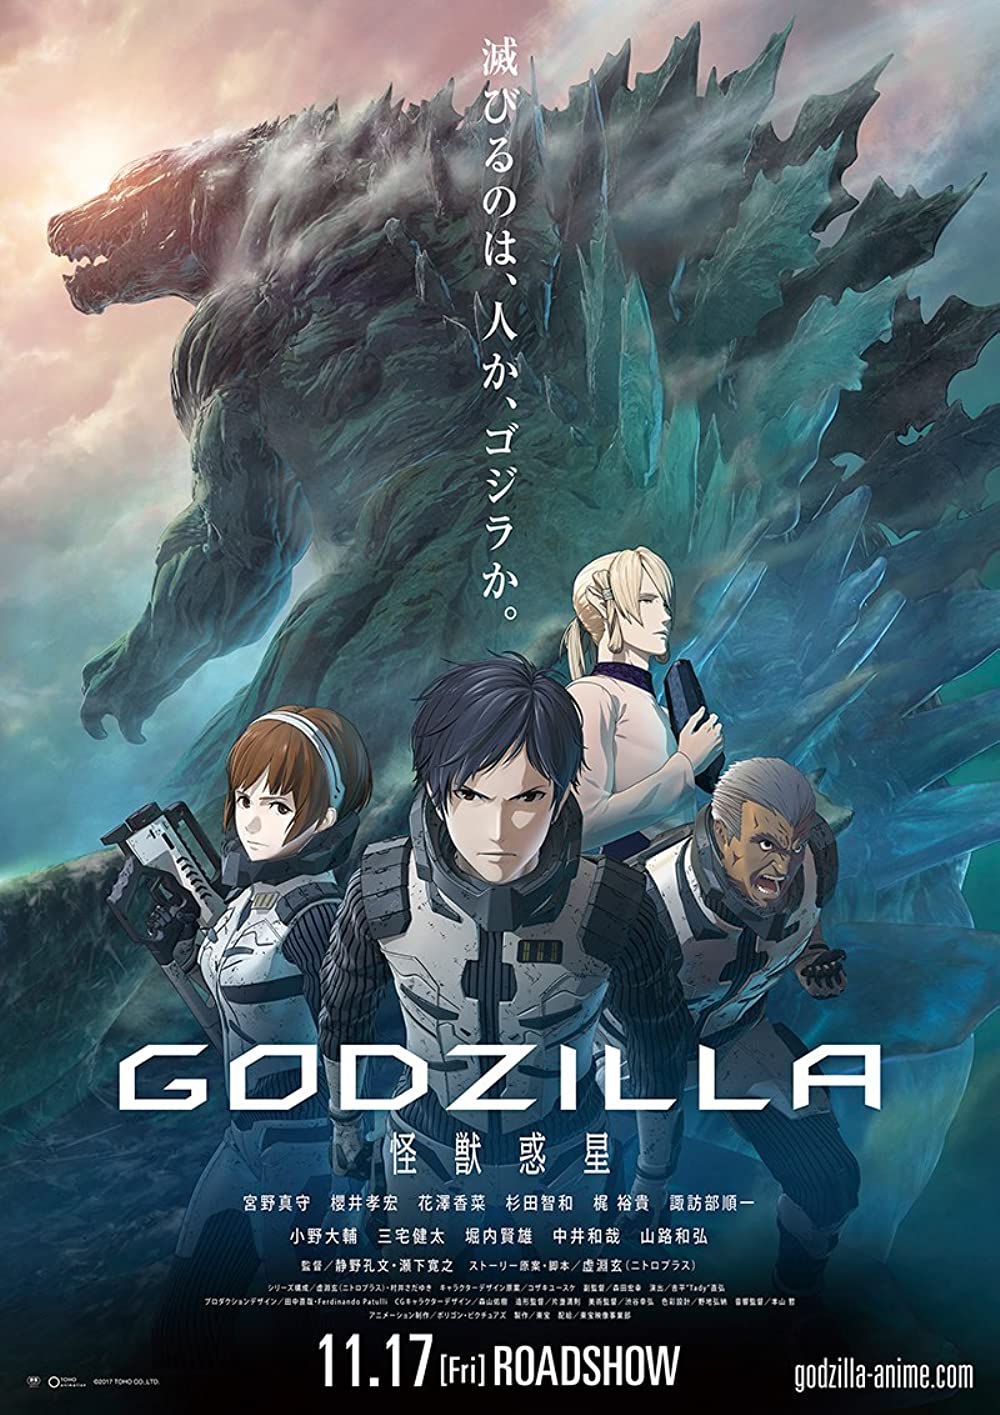 ดูหนังออนไลน์ฟรี Godzilla Planet of the Monsters ก็อดซิลล่า ดาวเคราะห์แห่งสัตว์ประหลาด 2017 พากย์ไทย